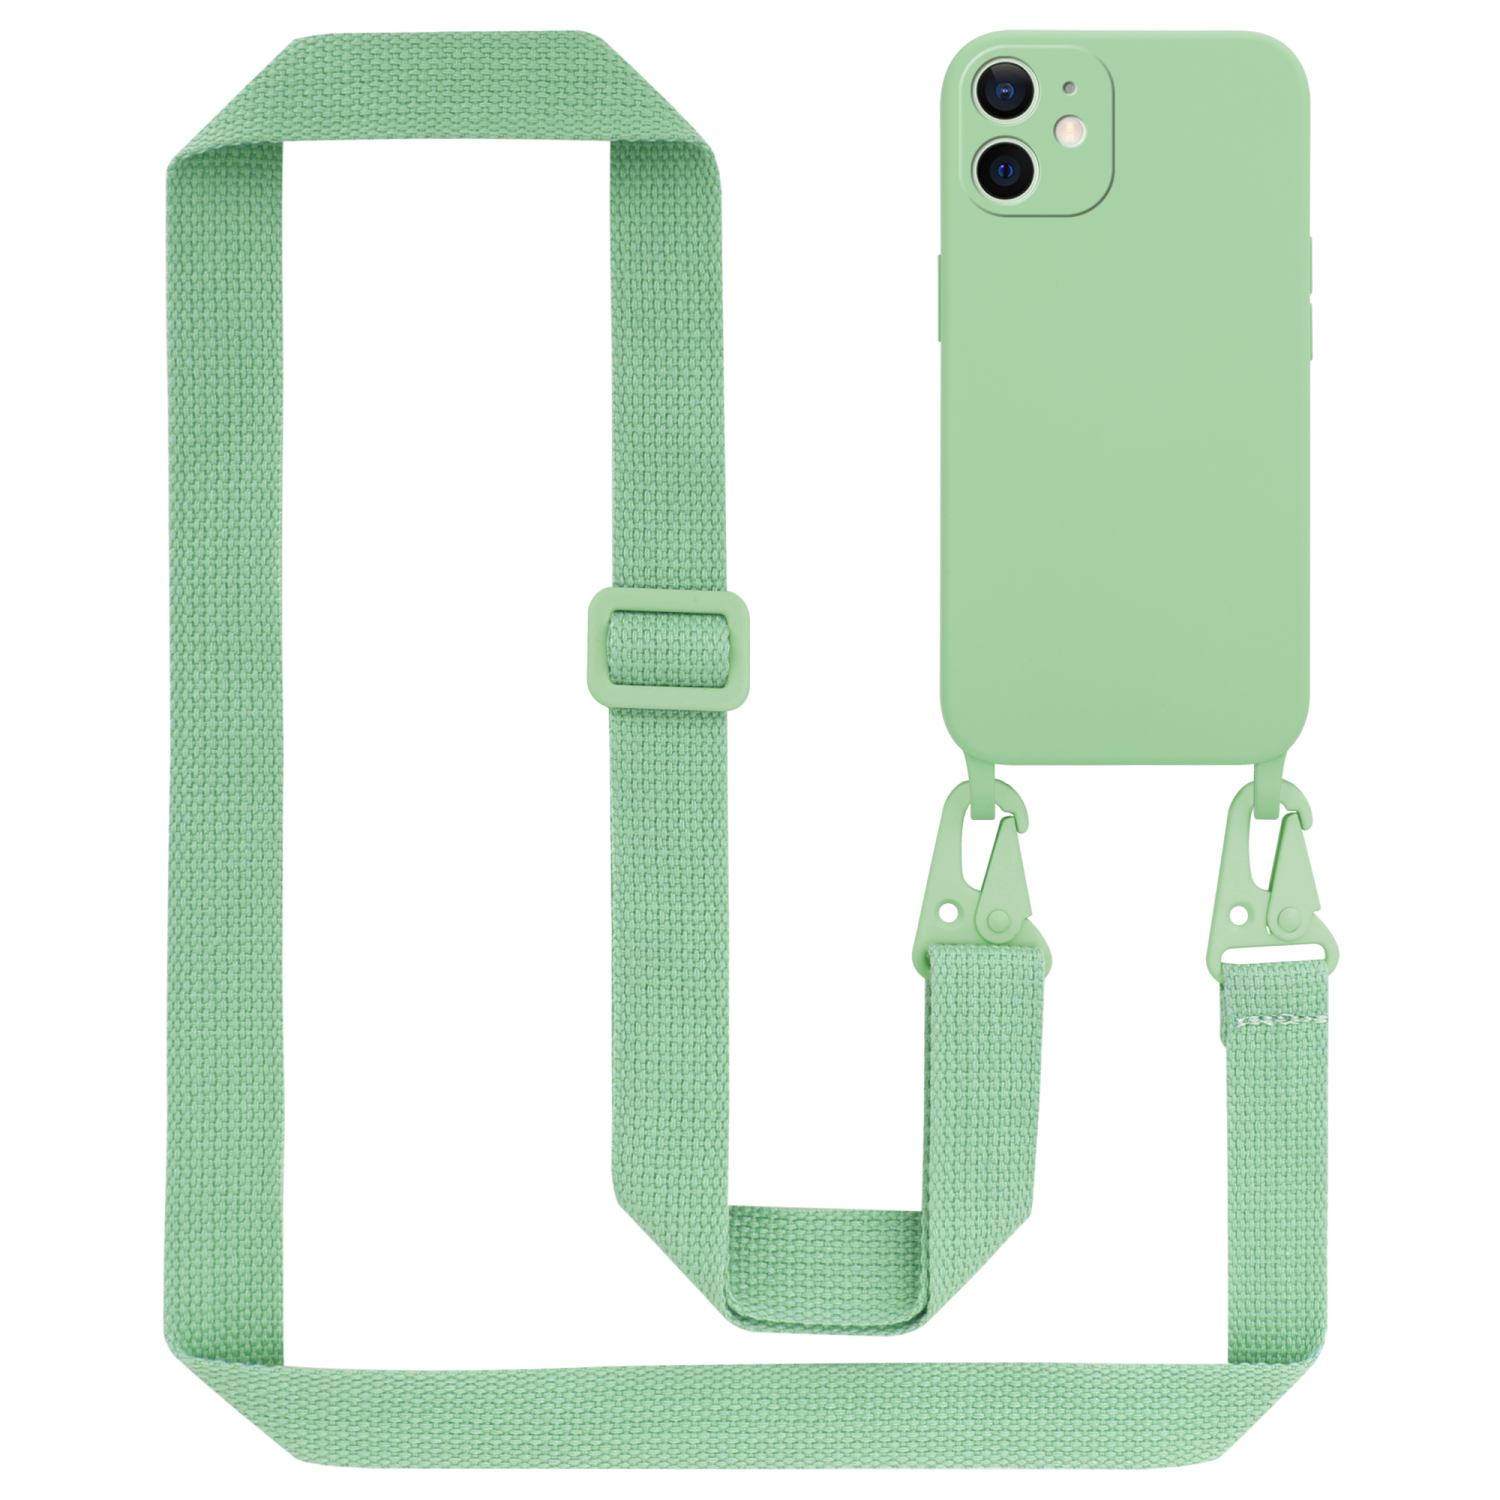 Cadorabo Mobiele telefoon ketting voor Apple iPhone 12 MINI in LIQUID LICHT GROEN - Silicone beschermhoes met lengte verstelbare koord riem